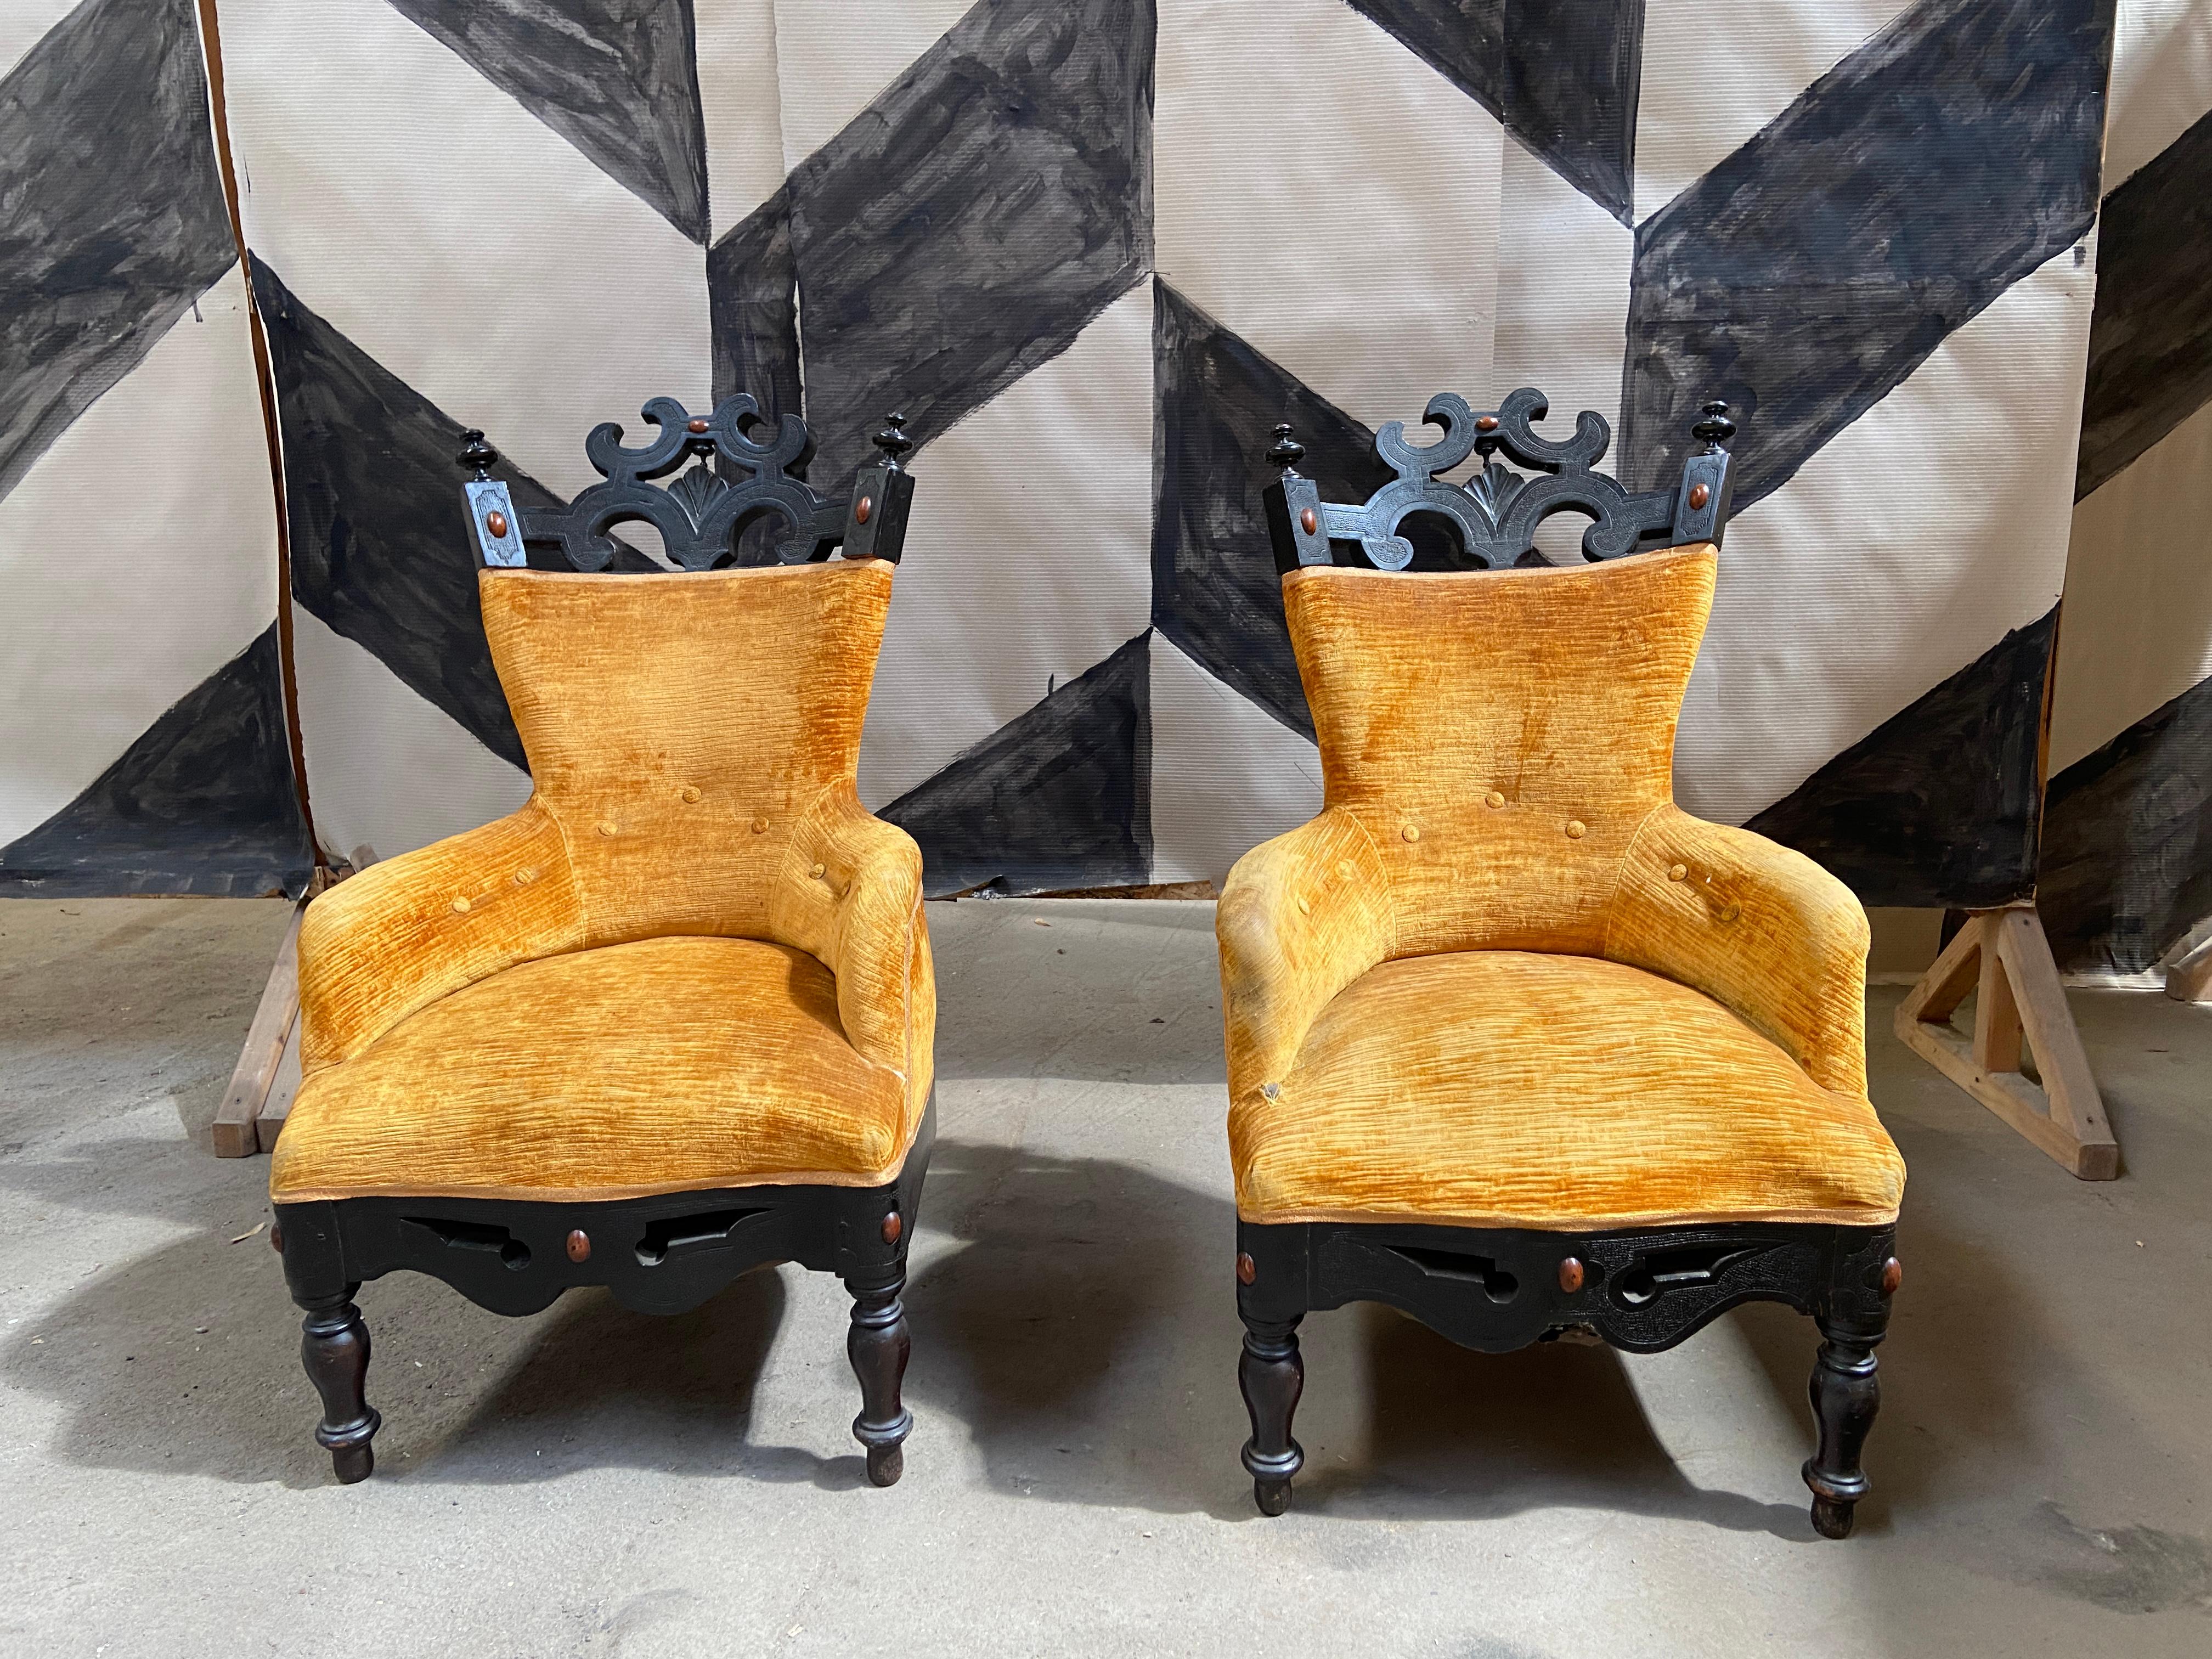 19ème siècle Paire de fauteuils rares anglo-indiens en bois ébénisé avec velours moiré d'origine.
